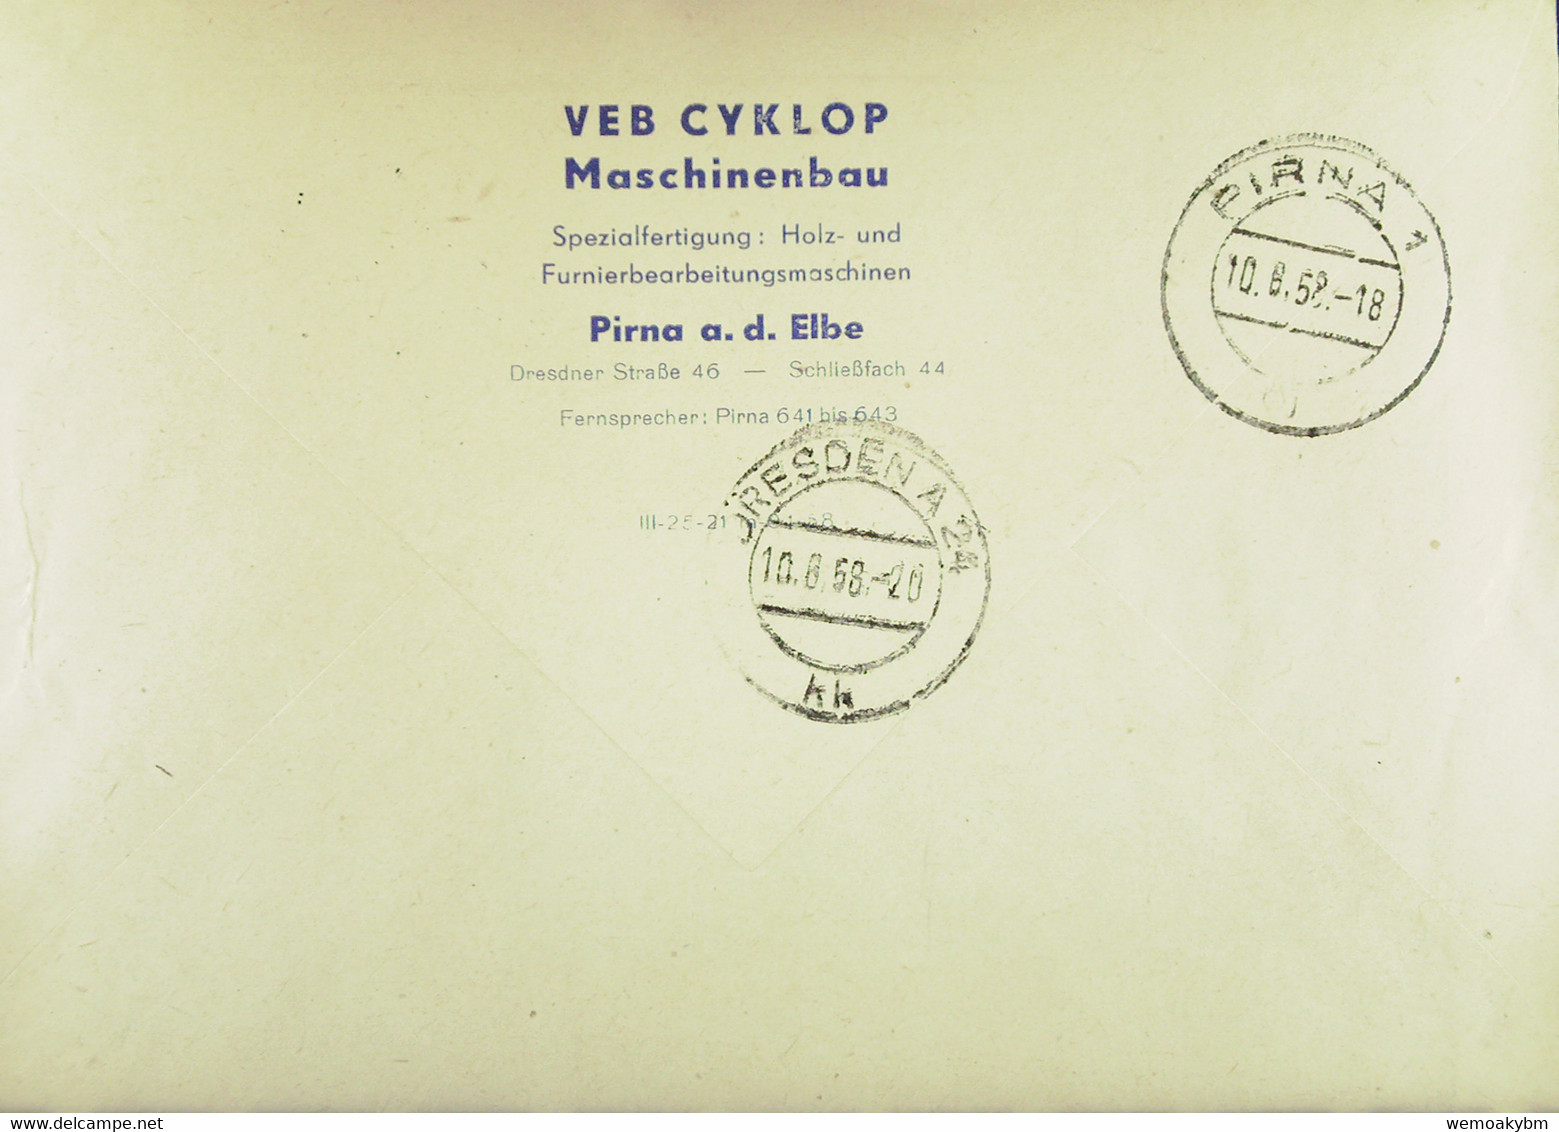 Fern-Brief Mit ZKD-Streifen Lfd.Nr: =M-493220= PIRNA 1 Vom 10.8.58 Abs: VEB CYKLOP Maschinenbau Pirna  Knr: 17 M - Central Mail Service